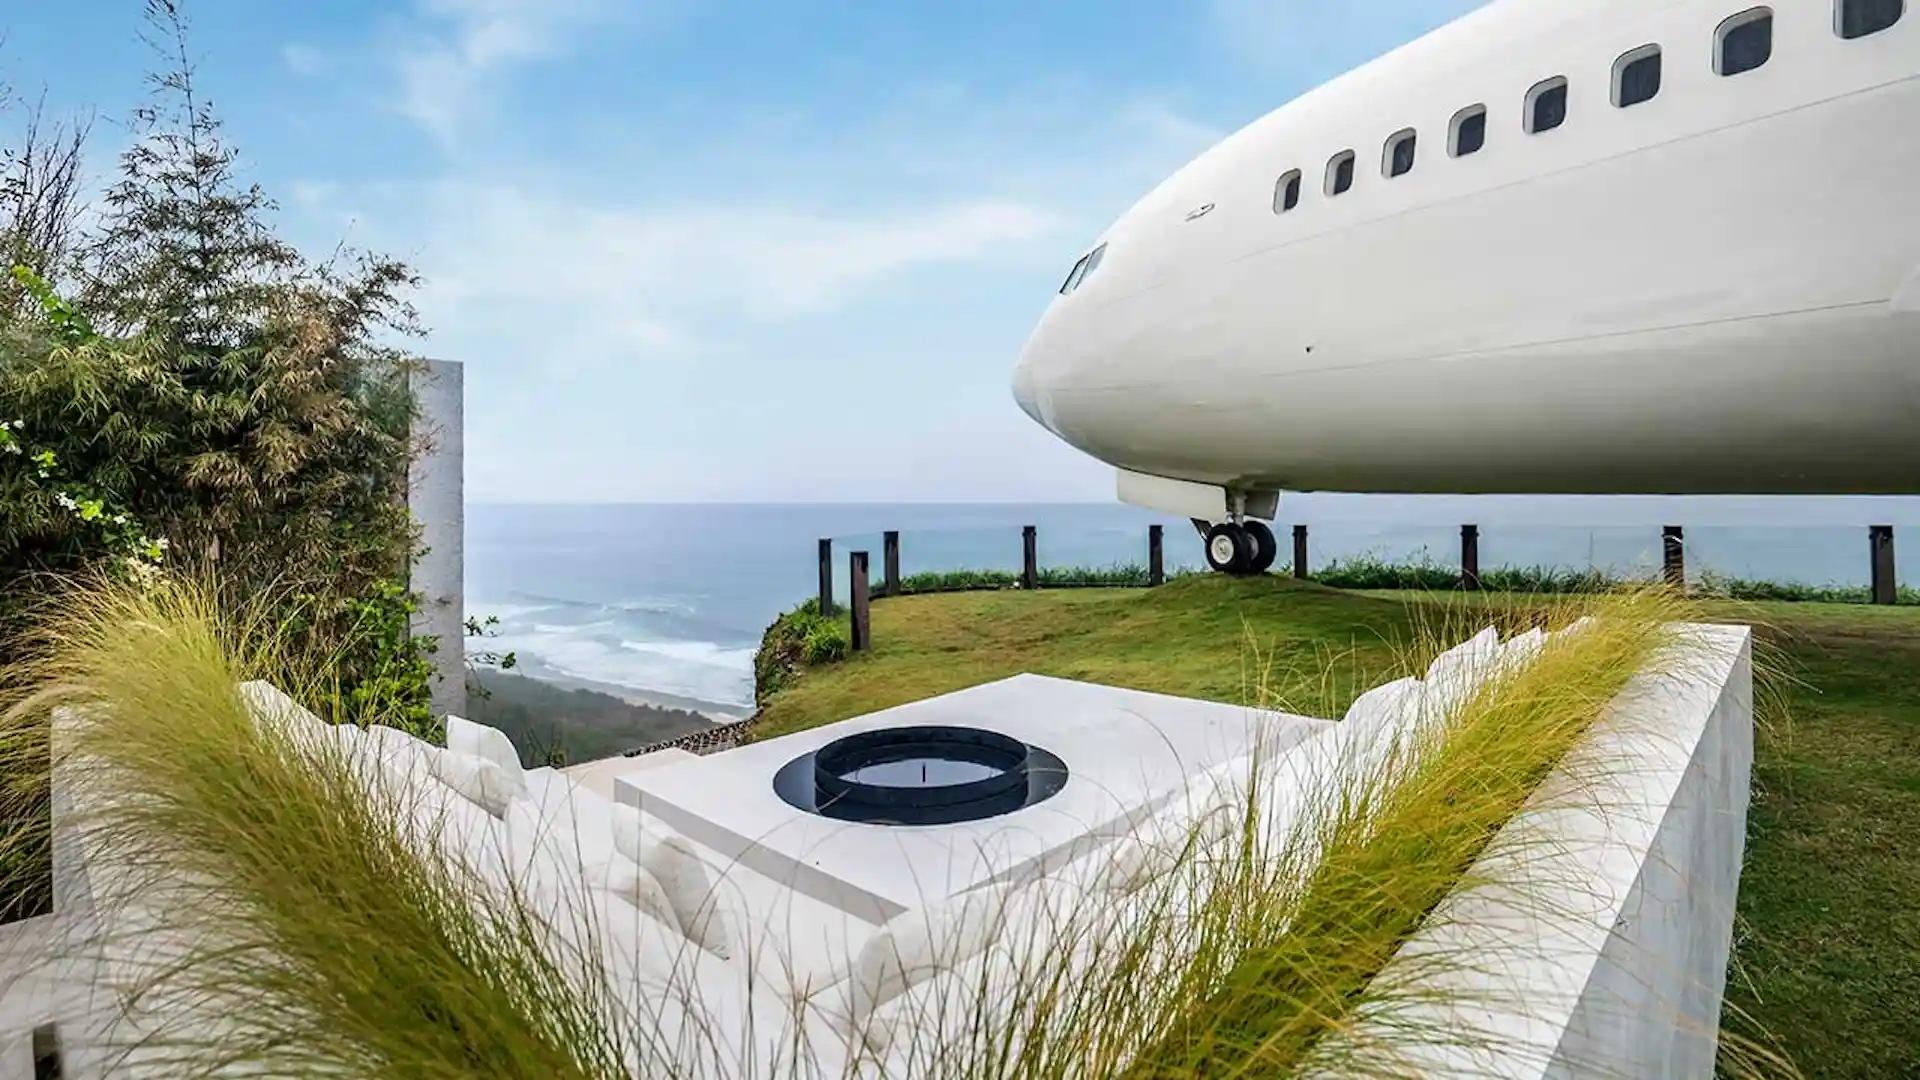 Así es el original hotel dentro de un avión Boeing 737 en Bali